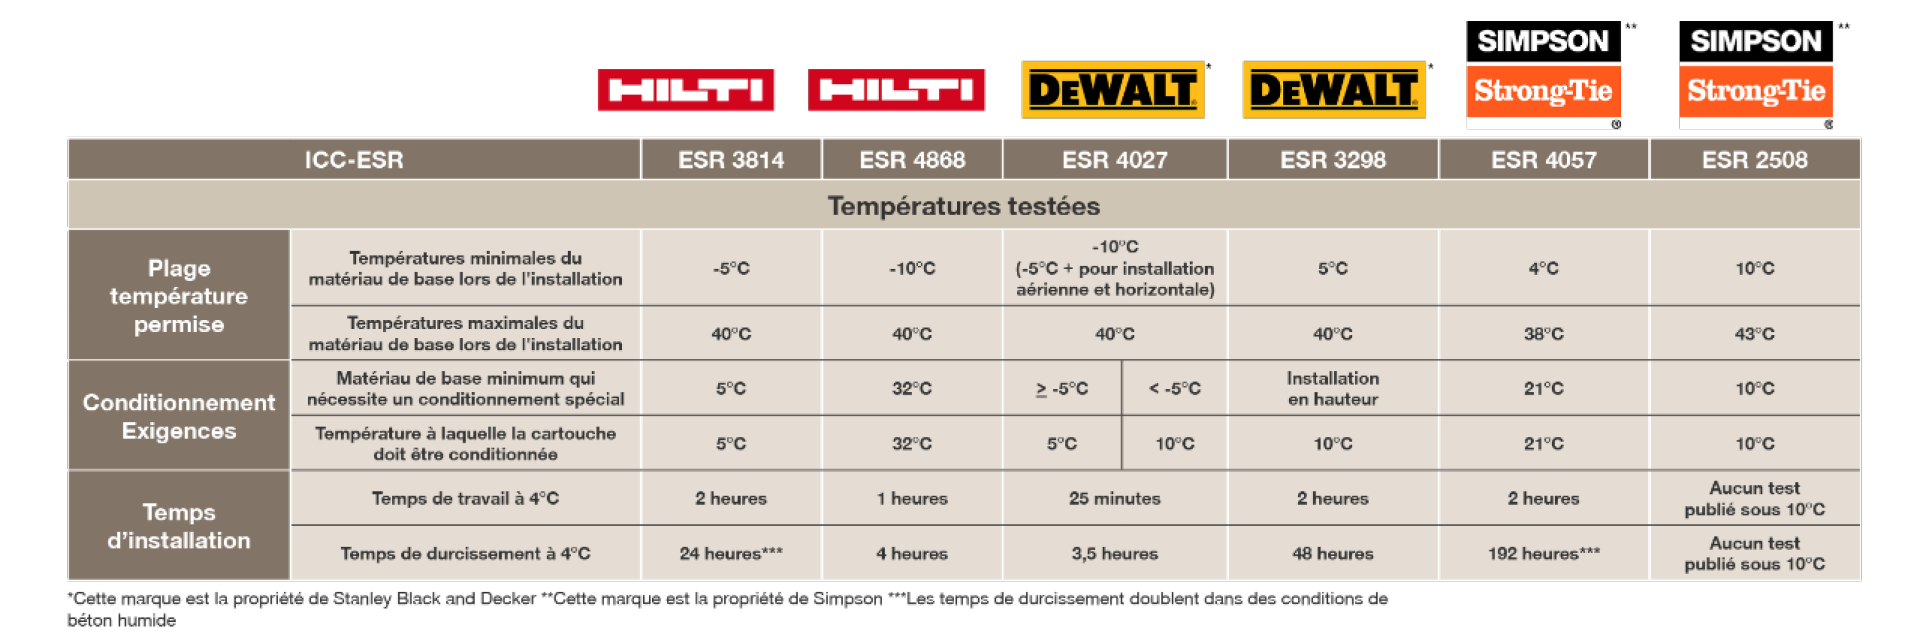 Hilti Beyond Bond vs DeWalt vs Simpson StrongTie ICC ESR par comparaison de température